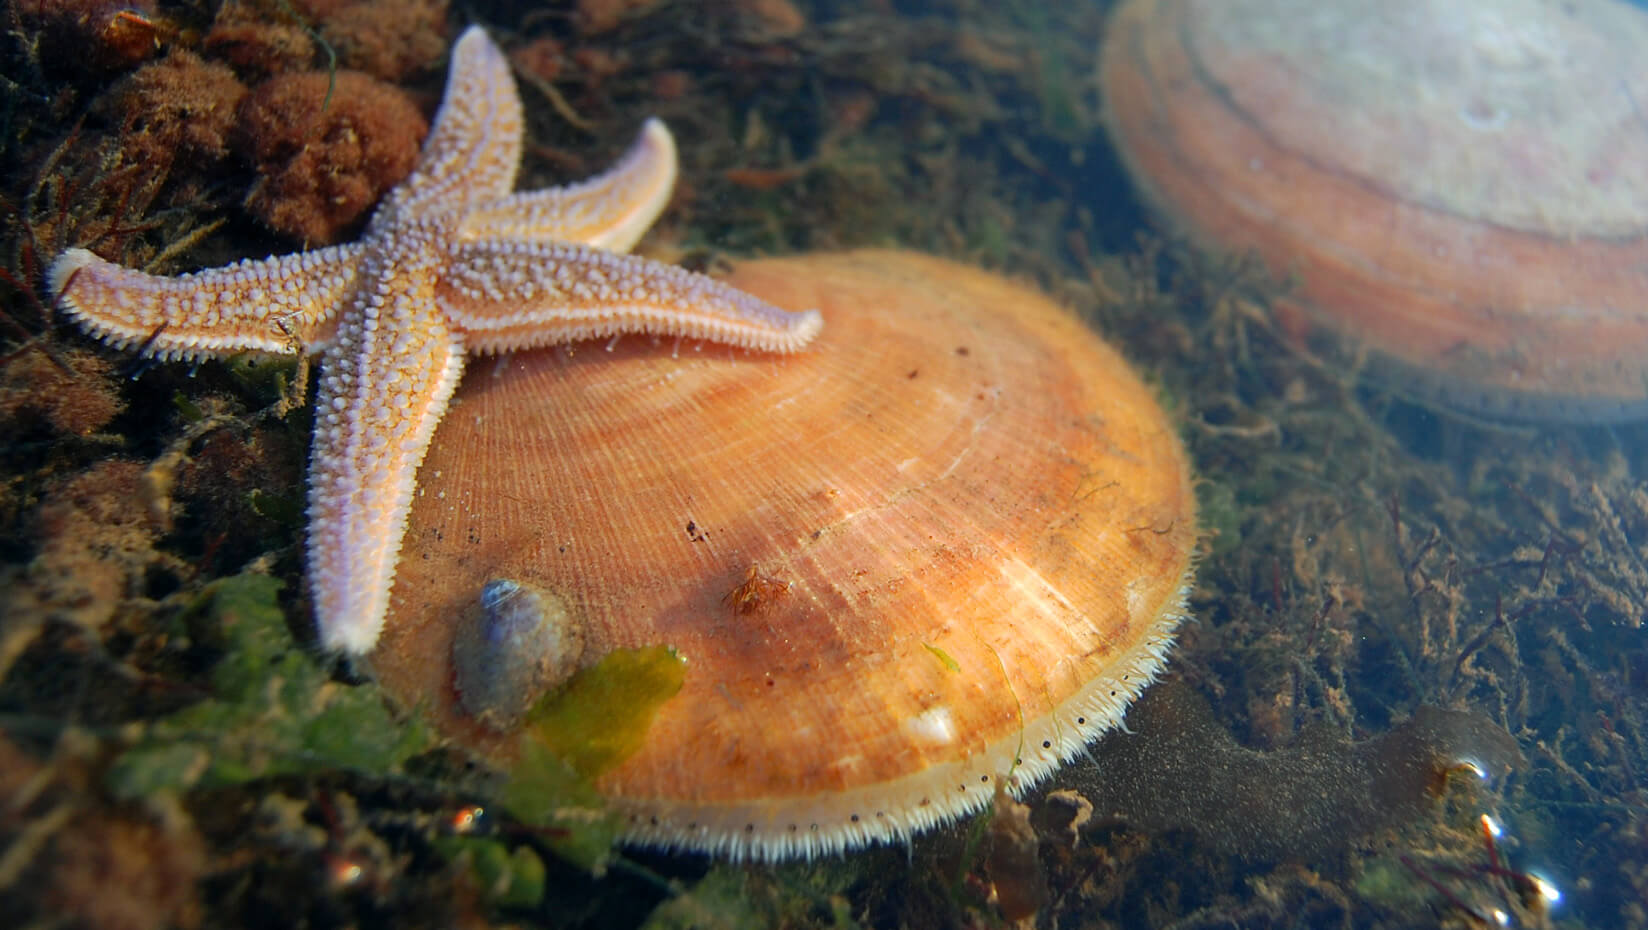 scallop sea star marine